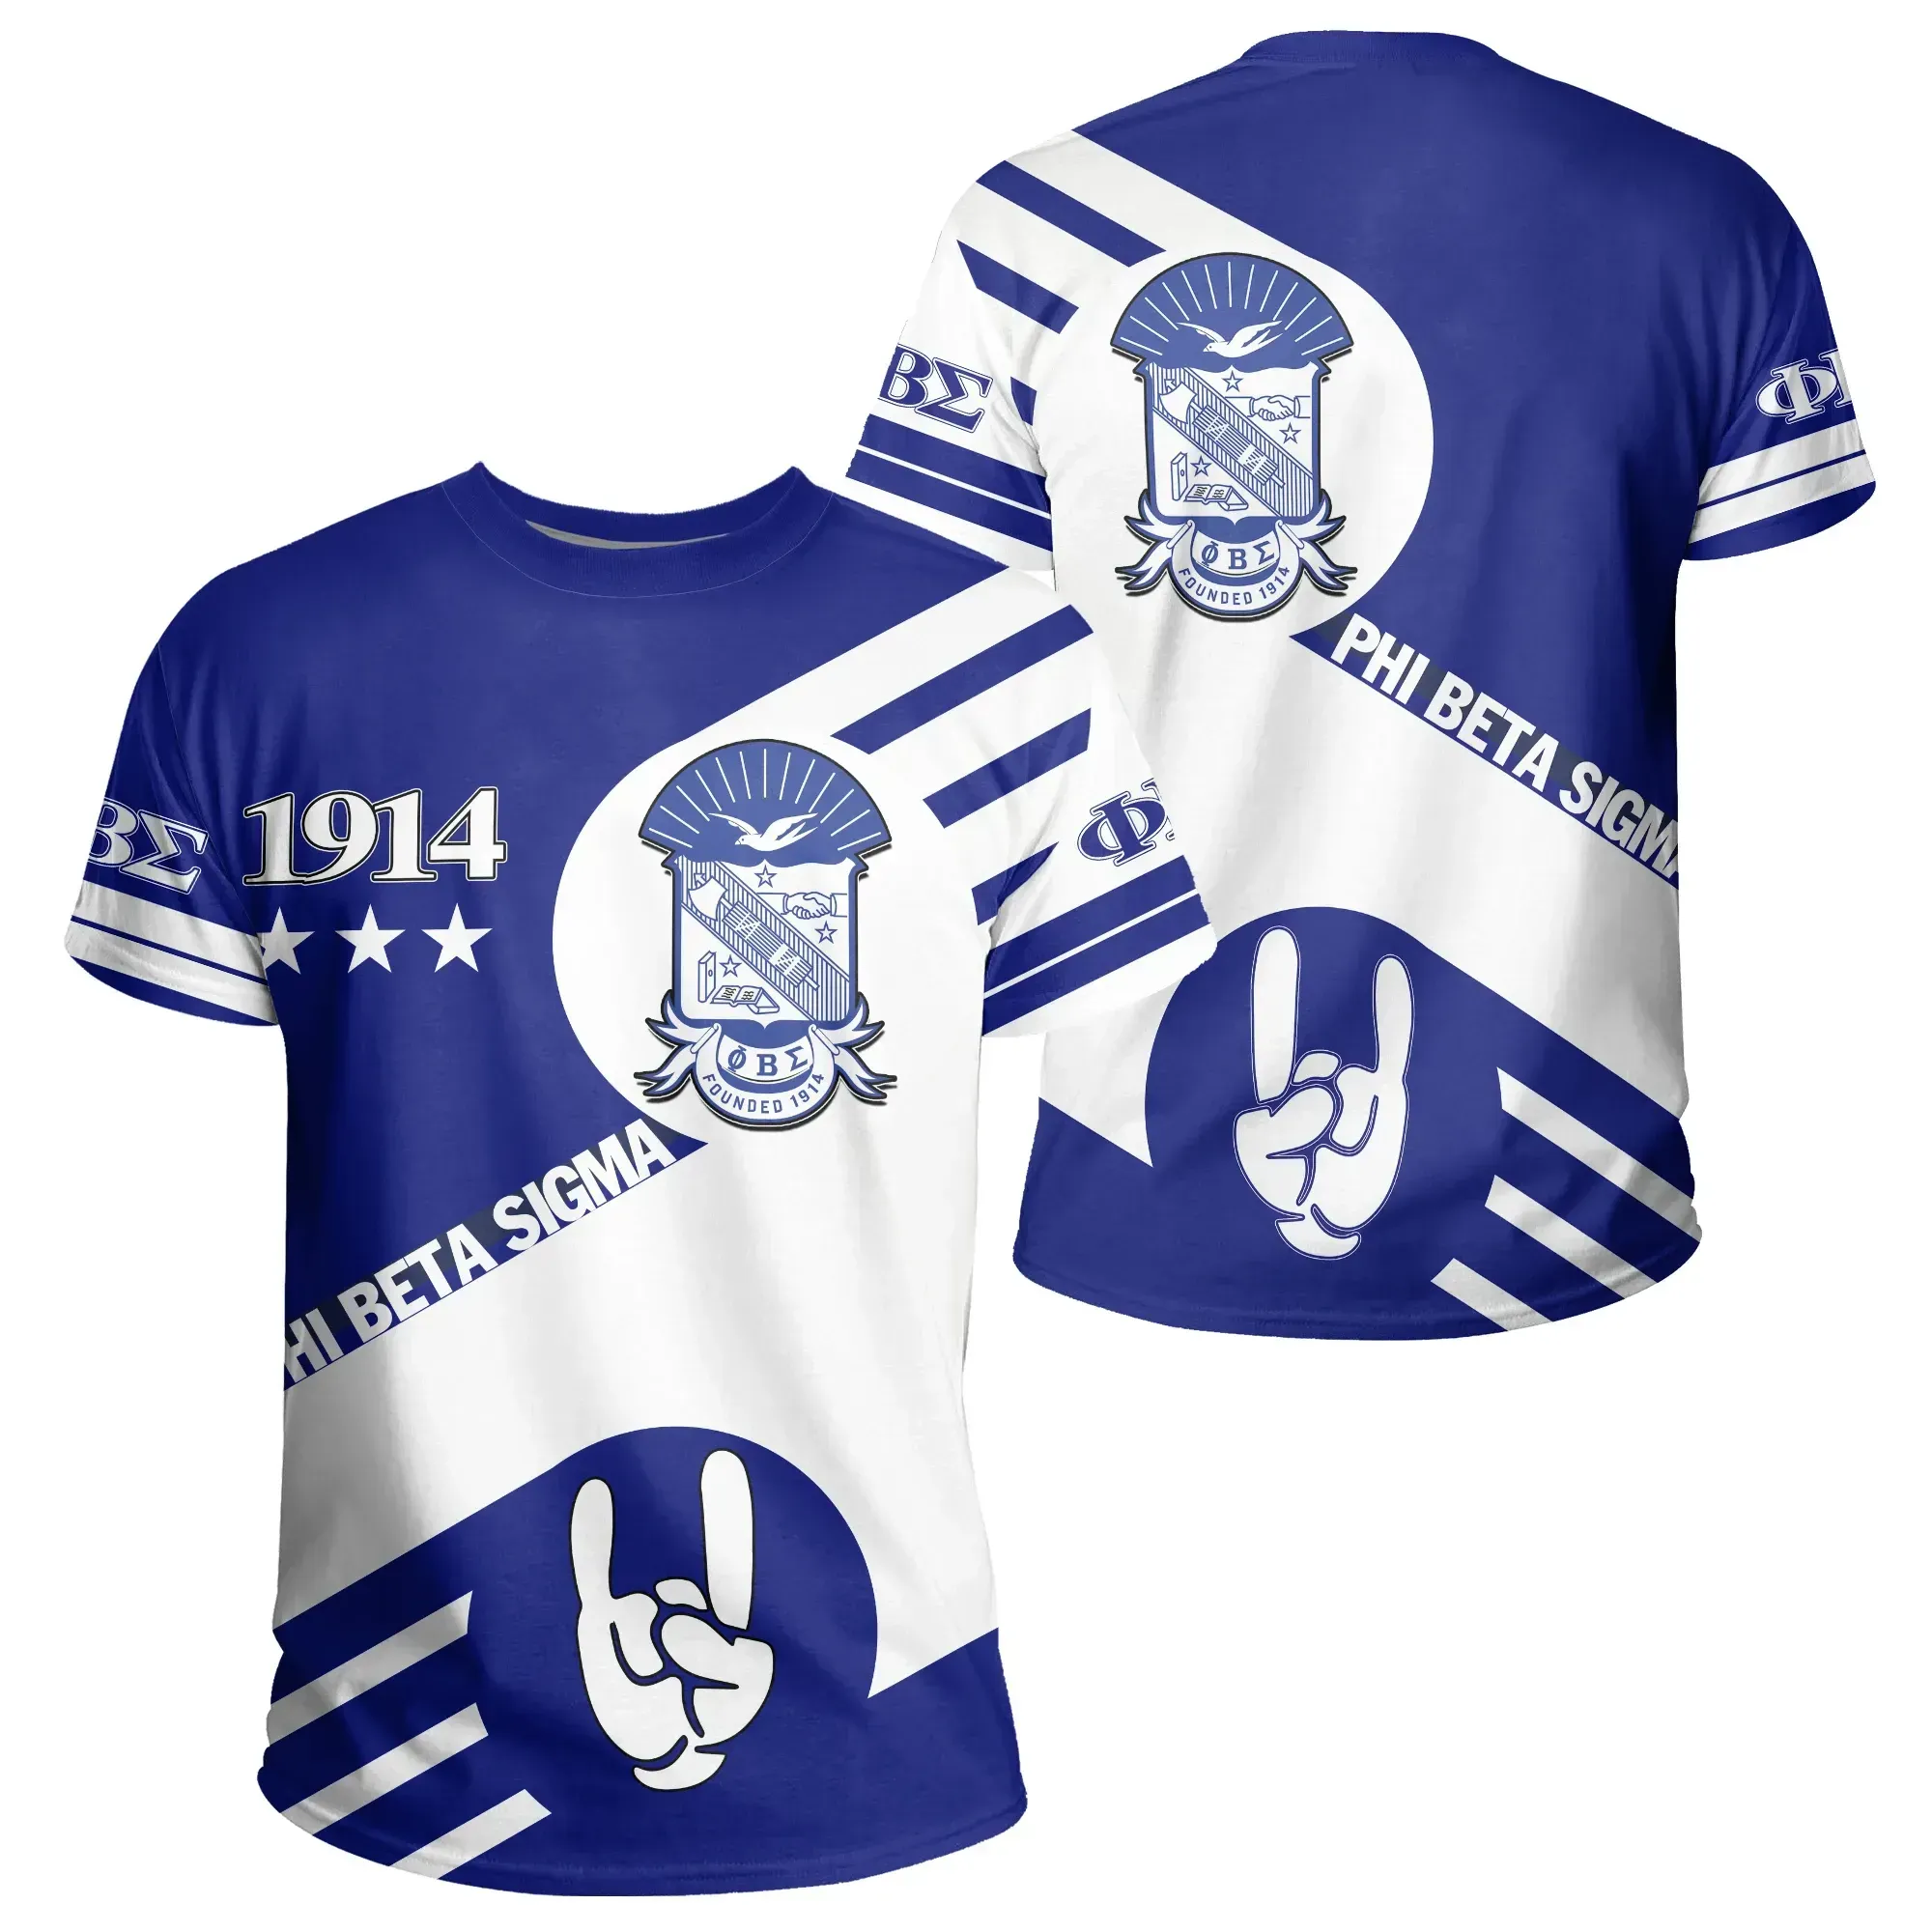 T-shirt – Sigma Gamma Rho Hand Sign Tee